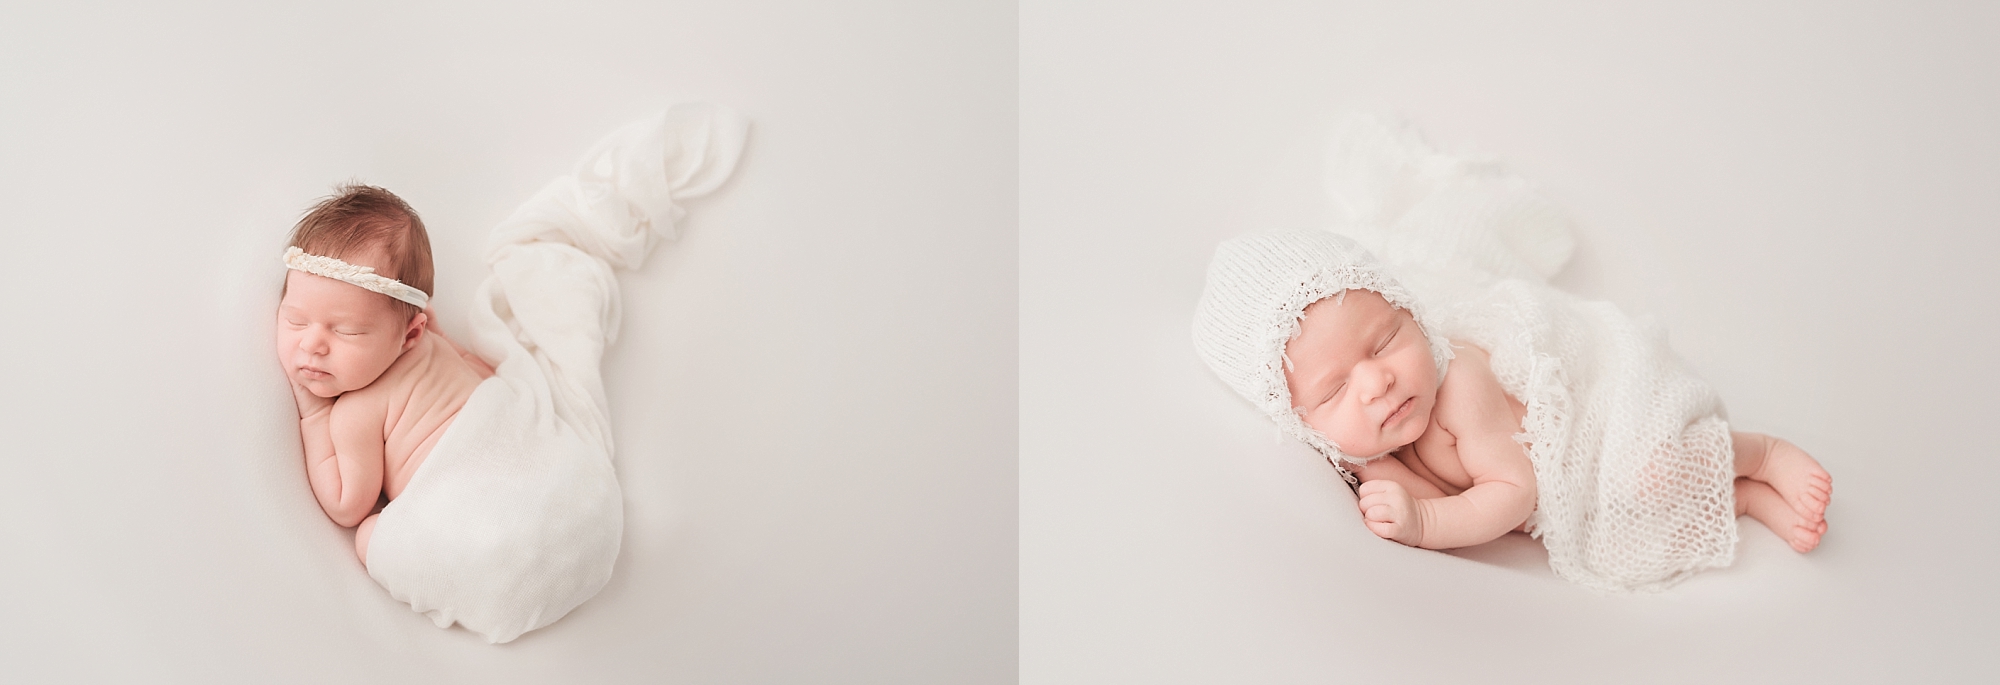 organic, naturally posed newborn portraits